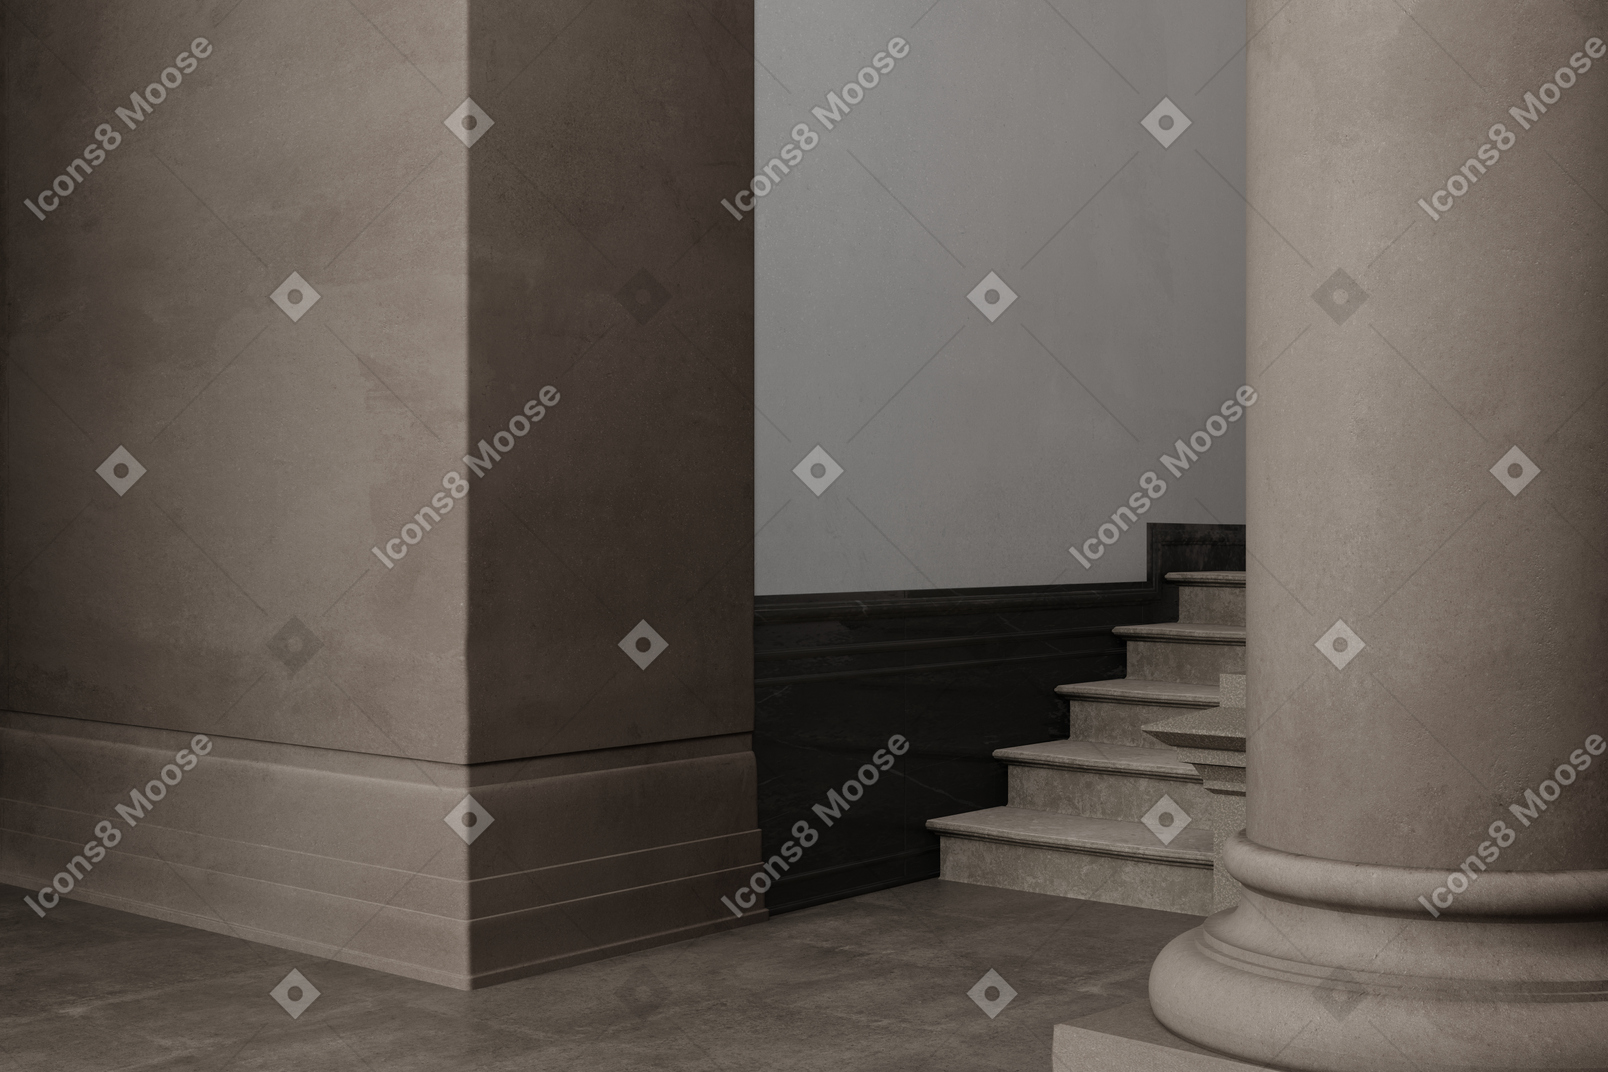 Interior marrón con escaleras y columna